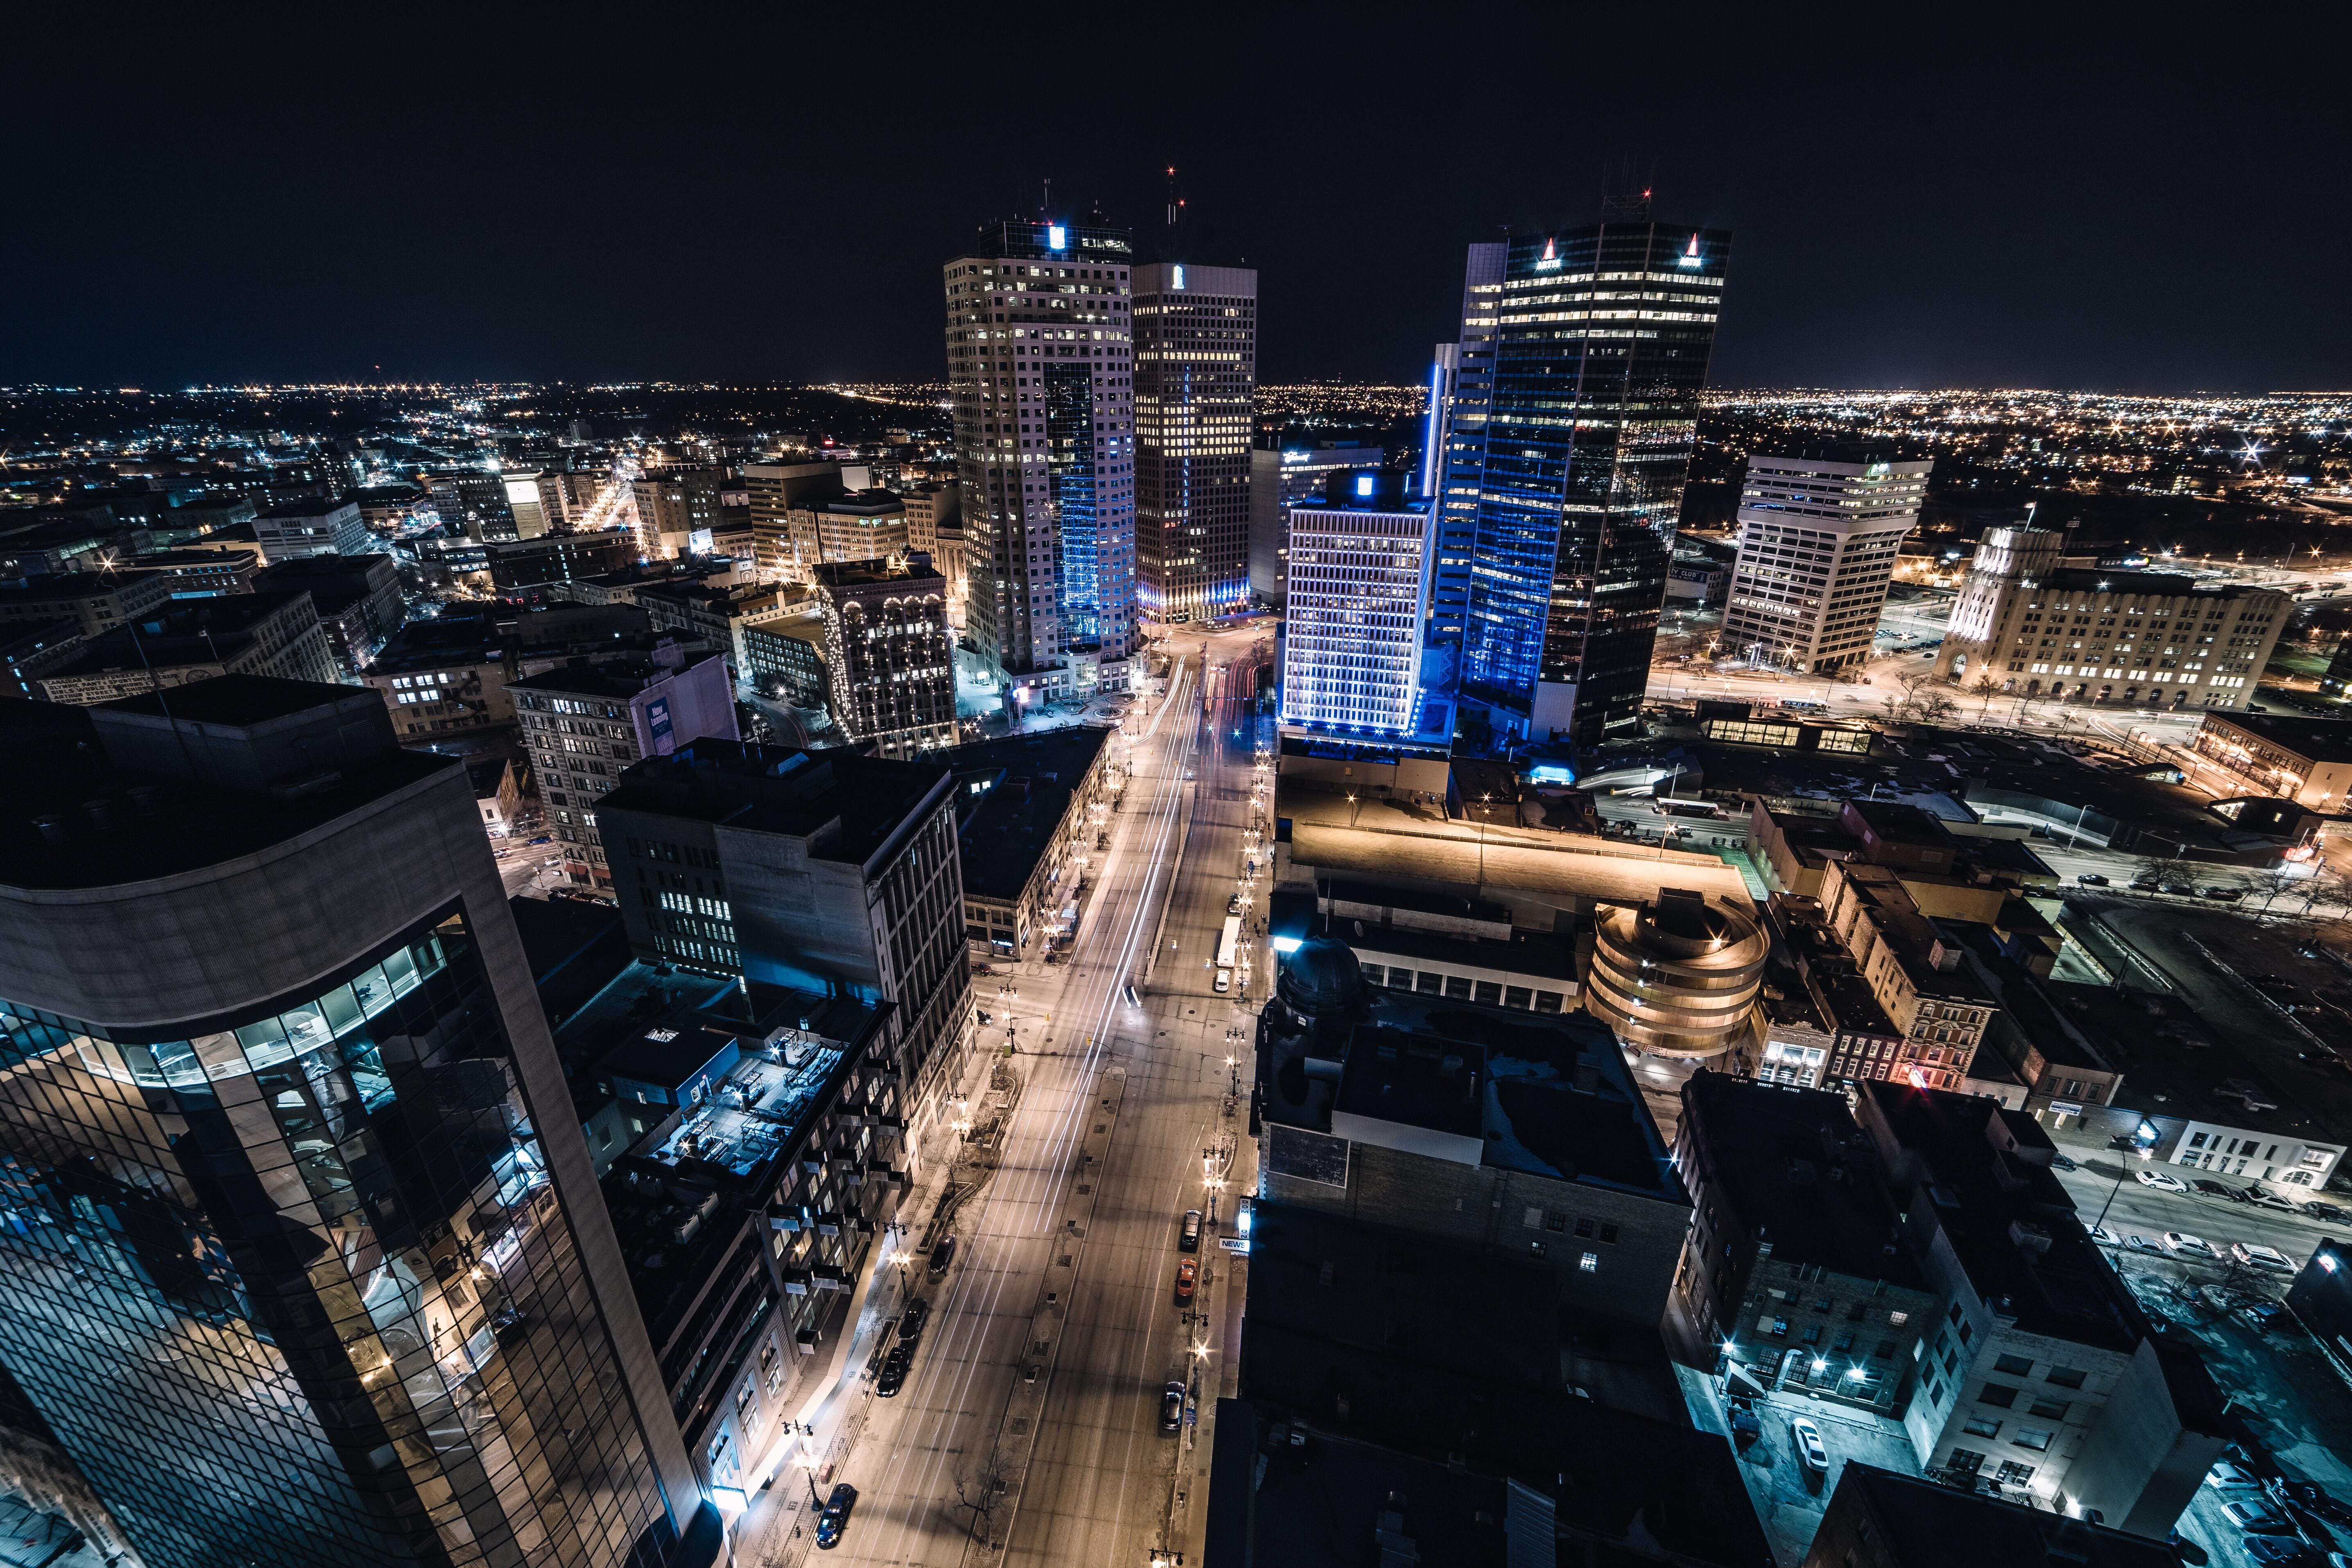 Manitoba city lights at night.